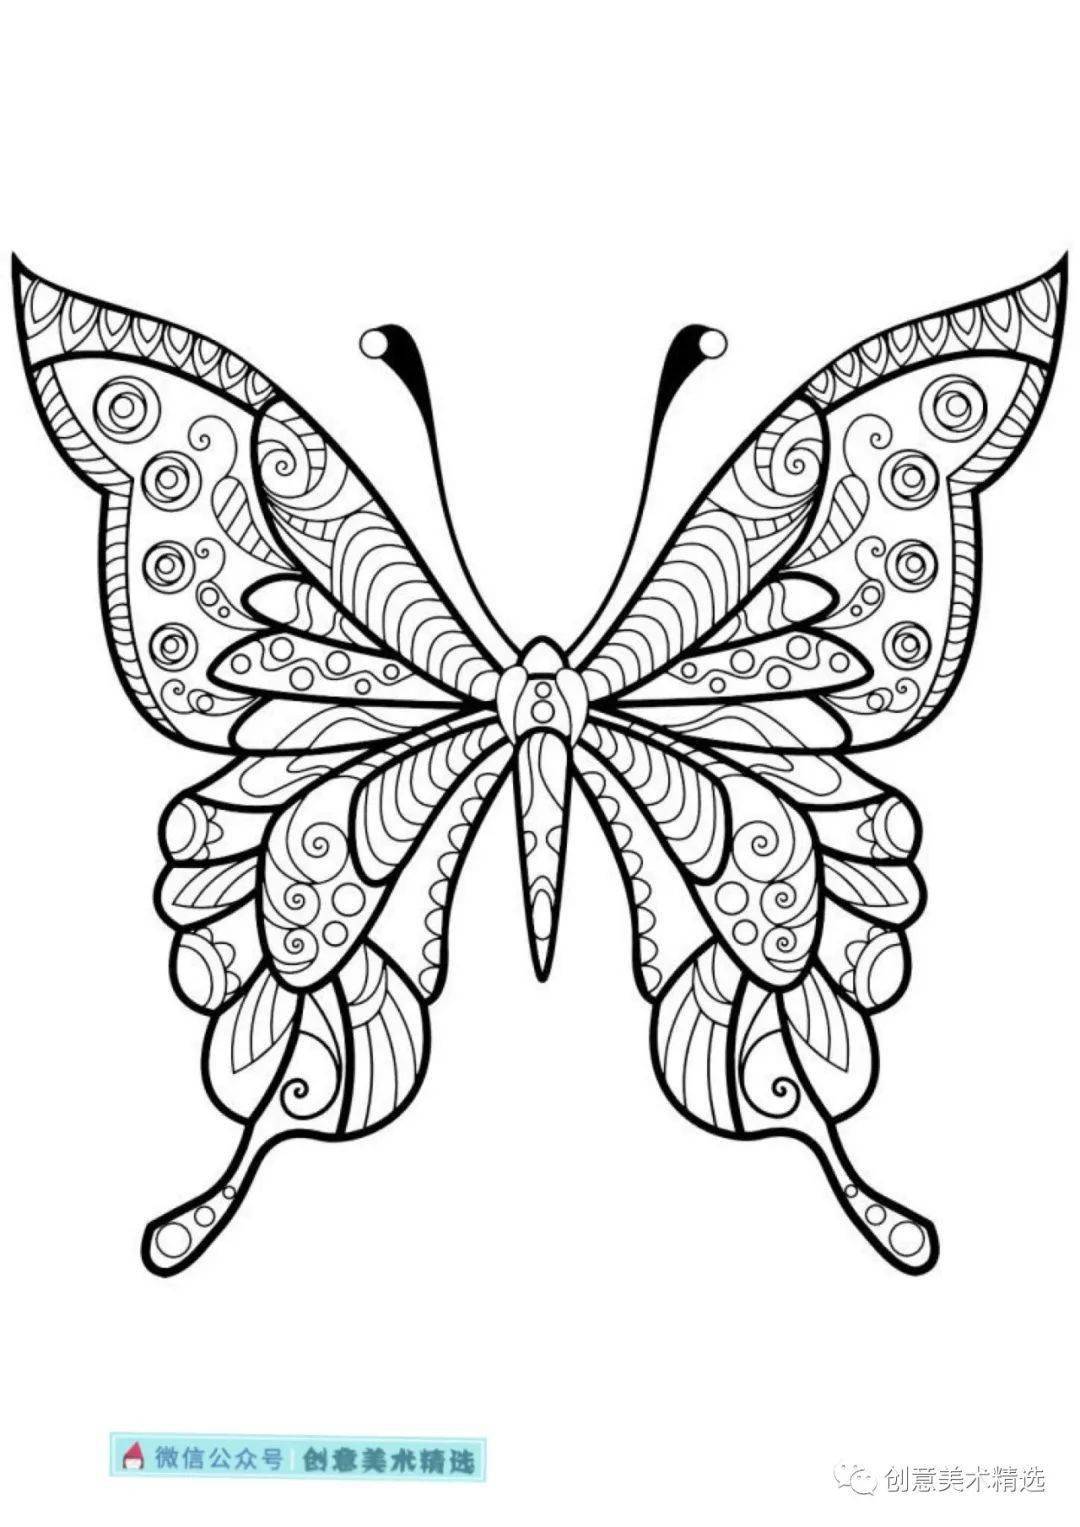 黑白线描临摹素材——漂亮的蝴蝶主题线描装饰画